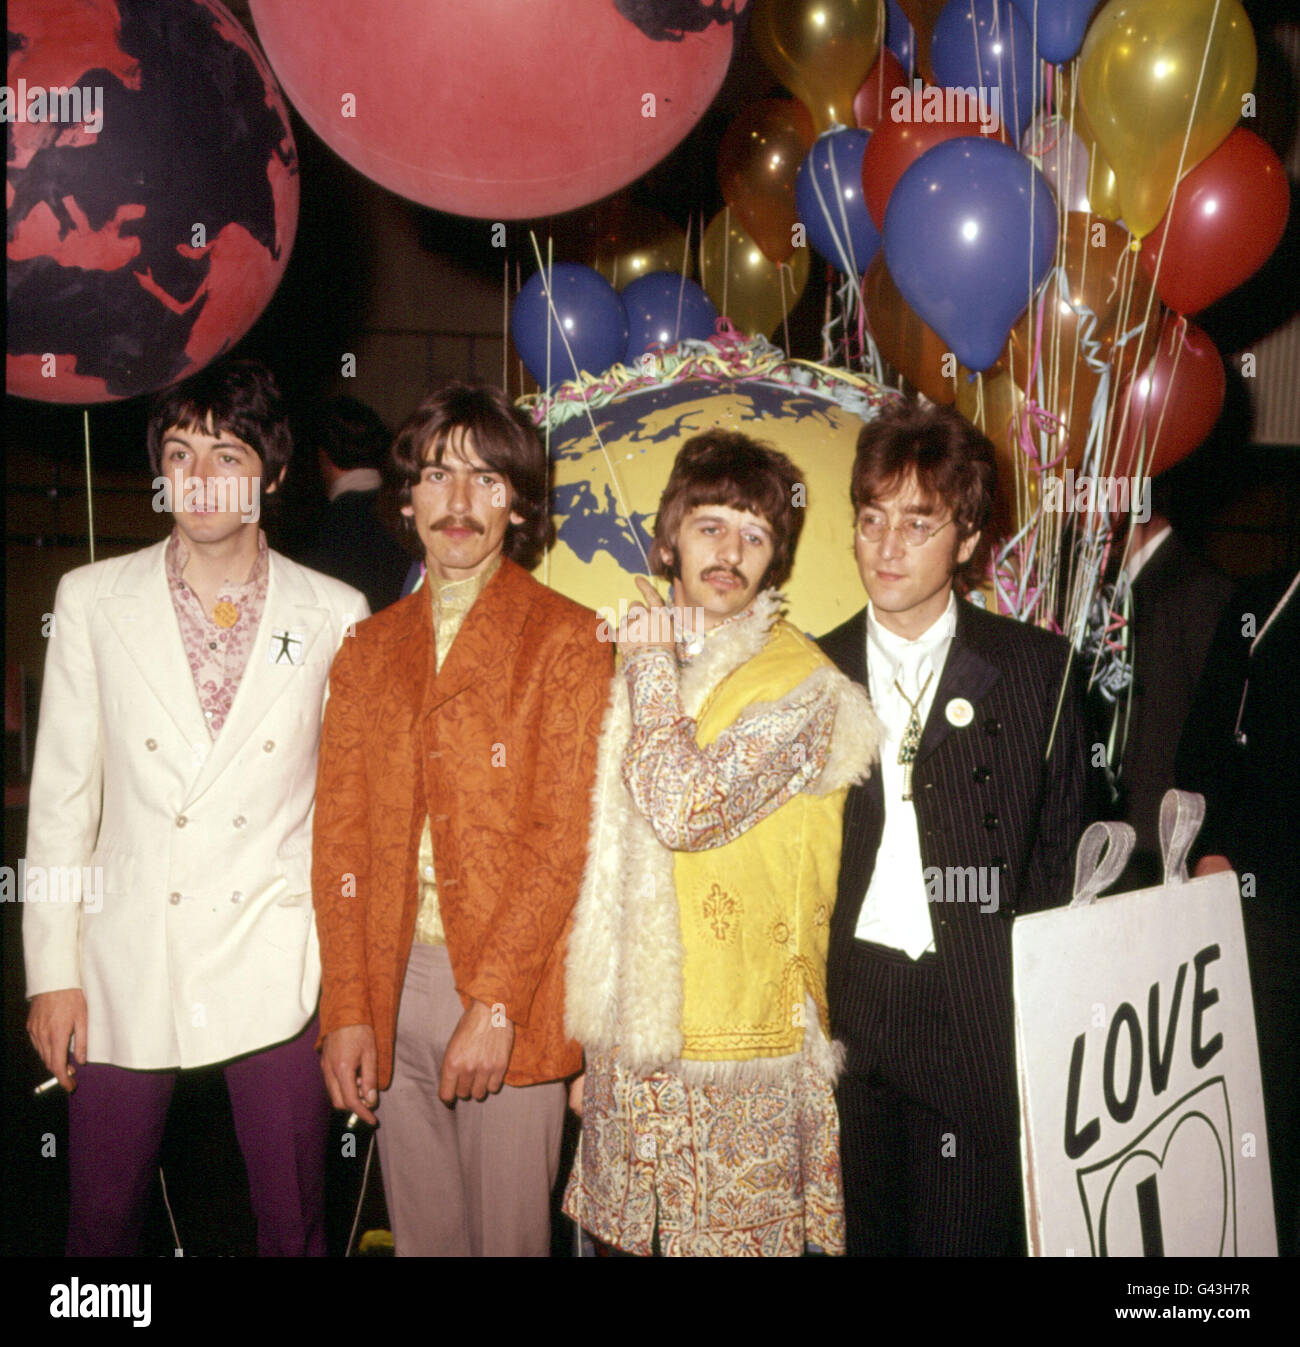 Les Beatles lors d'une séance d'enregistrement à Londres.(l-r) Paul McCartney, George Harrison, Ringo Starr et John Lennon.*12/08/2000 le 20e anniversaire de la mort de John Lennon était commémoré vendredi 8 décembre 2000, avec une plaque bleue dévoilée dans sa maison d'enfance de banlieue.Lennon a vécu dans la petite maison mitoyenne à Woolton, Liverpool, de l'âge de cinq ans à 1963 ans, quand l'homme de 23 ans a atteint la renommée mondiale avec les Beatles.* 12/11/2000: Le groupe va libérer un album largement prévu pour devenir l'un des plus grands vendeurs de tous les temps.Avec 80 minutes de musique, l'album, Banque D'Images